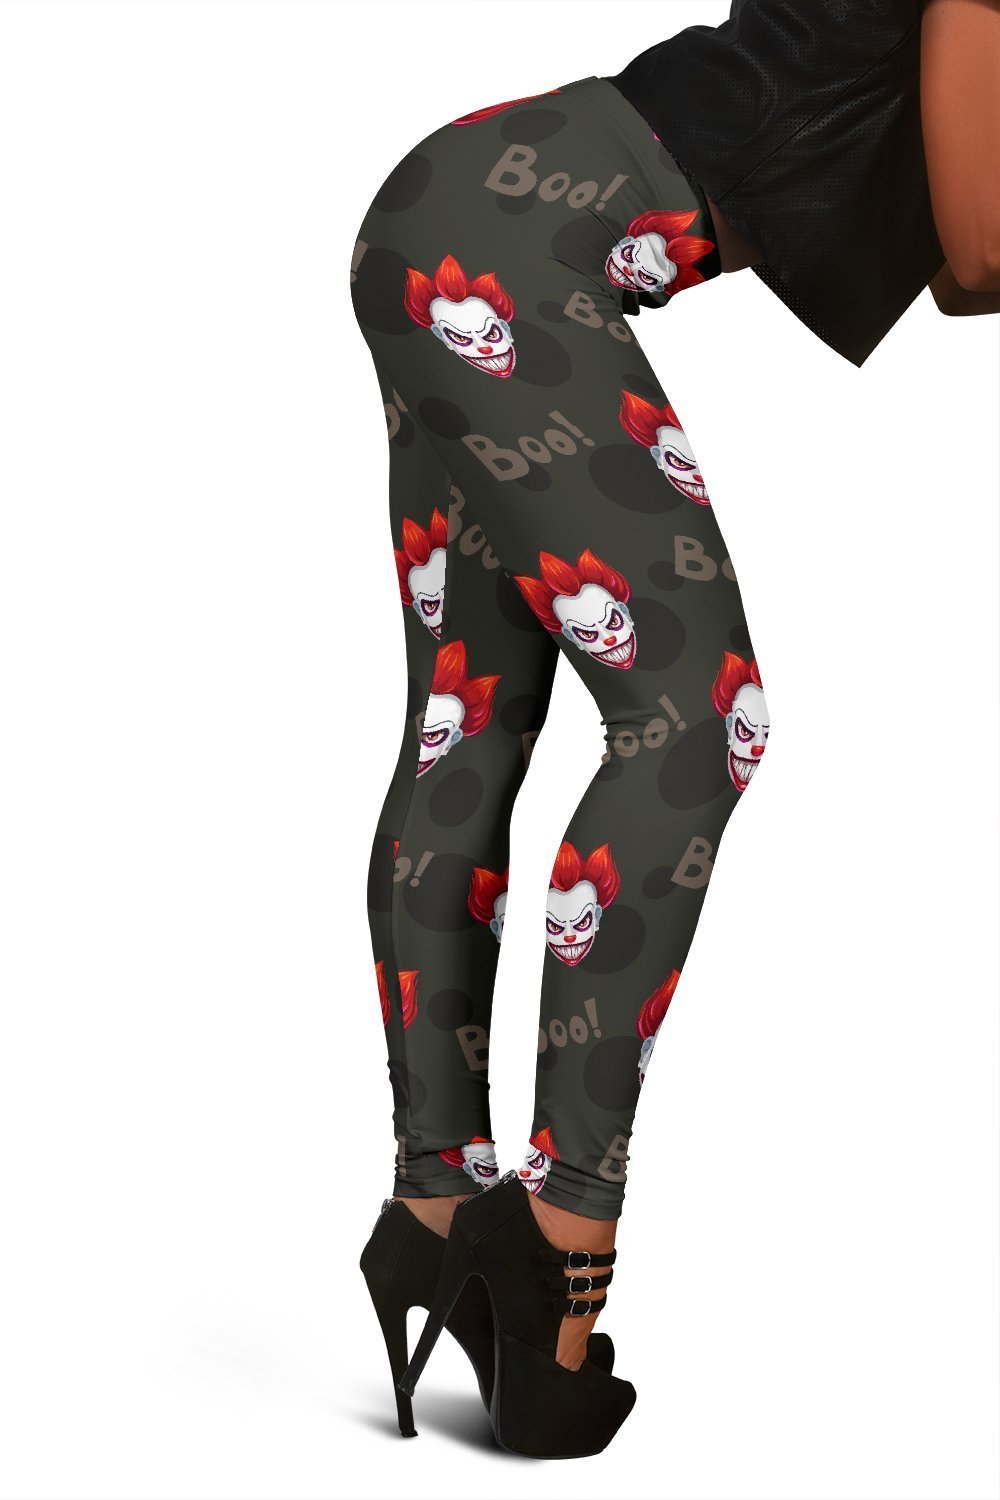 Scary Clown Print Pattern Women Leggings-grizzshop